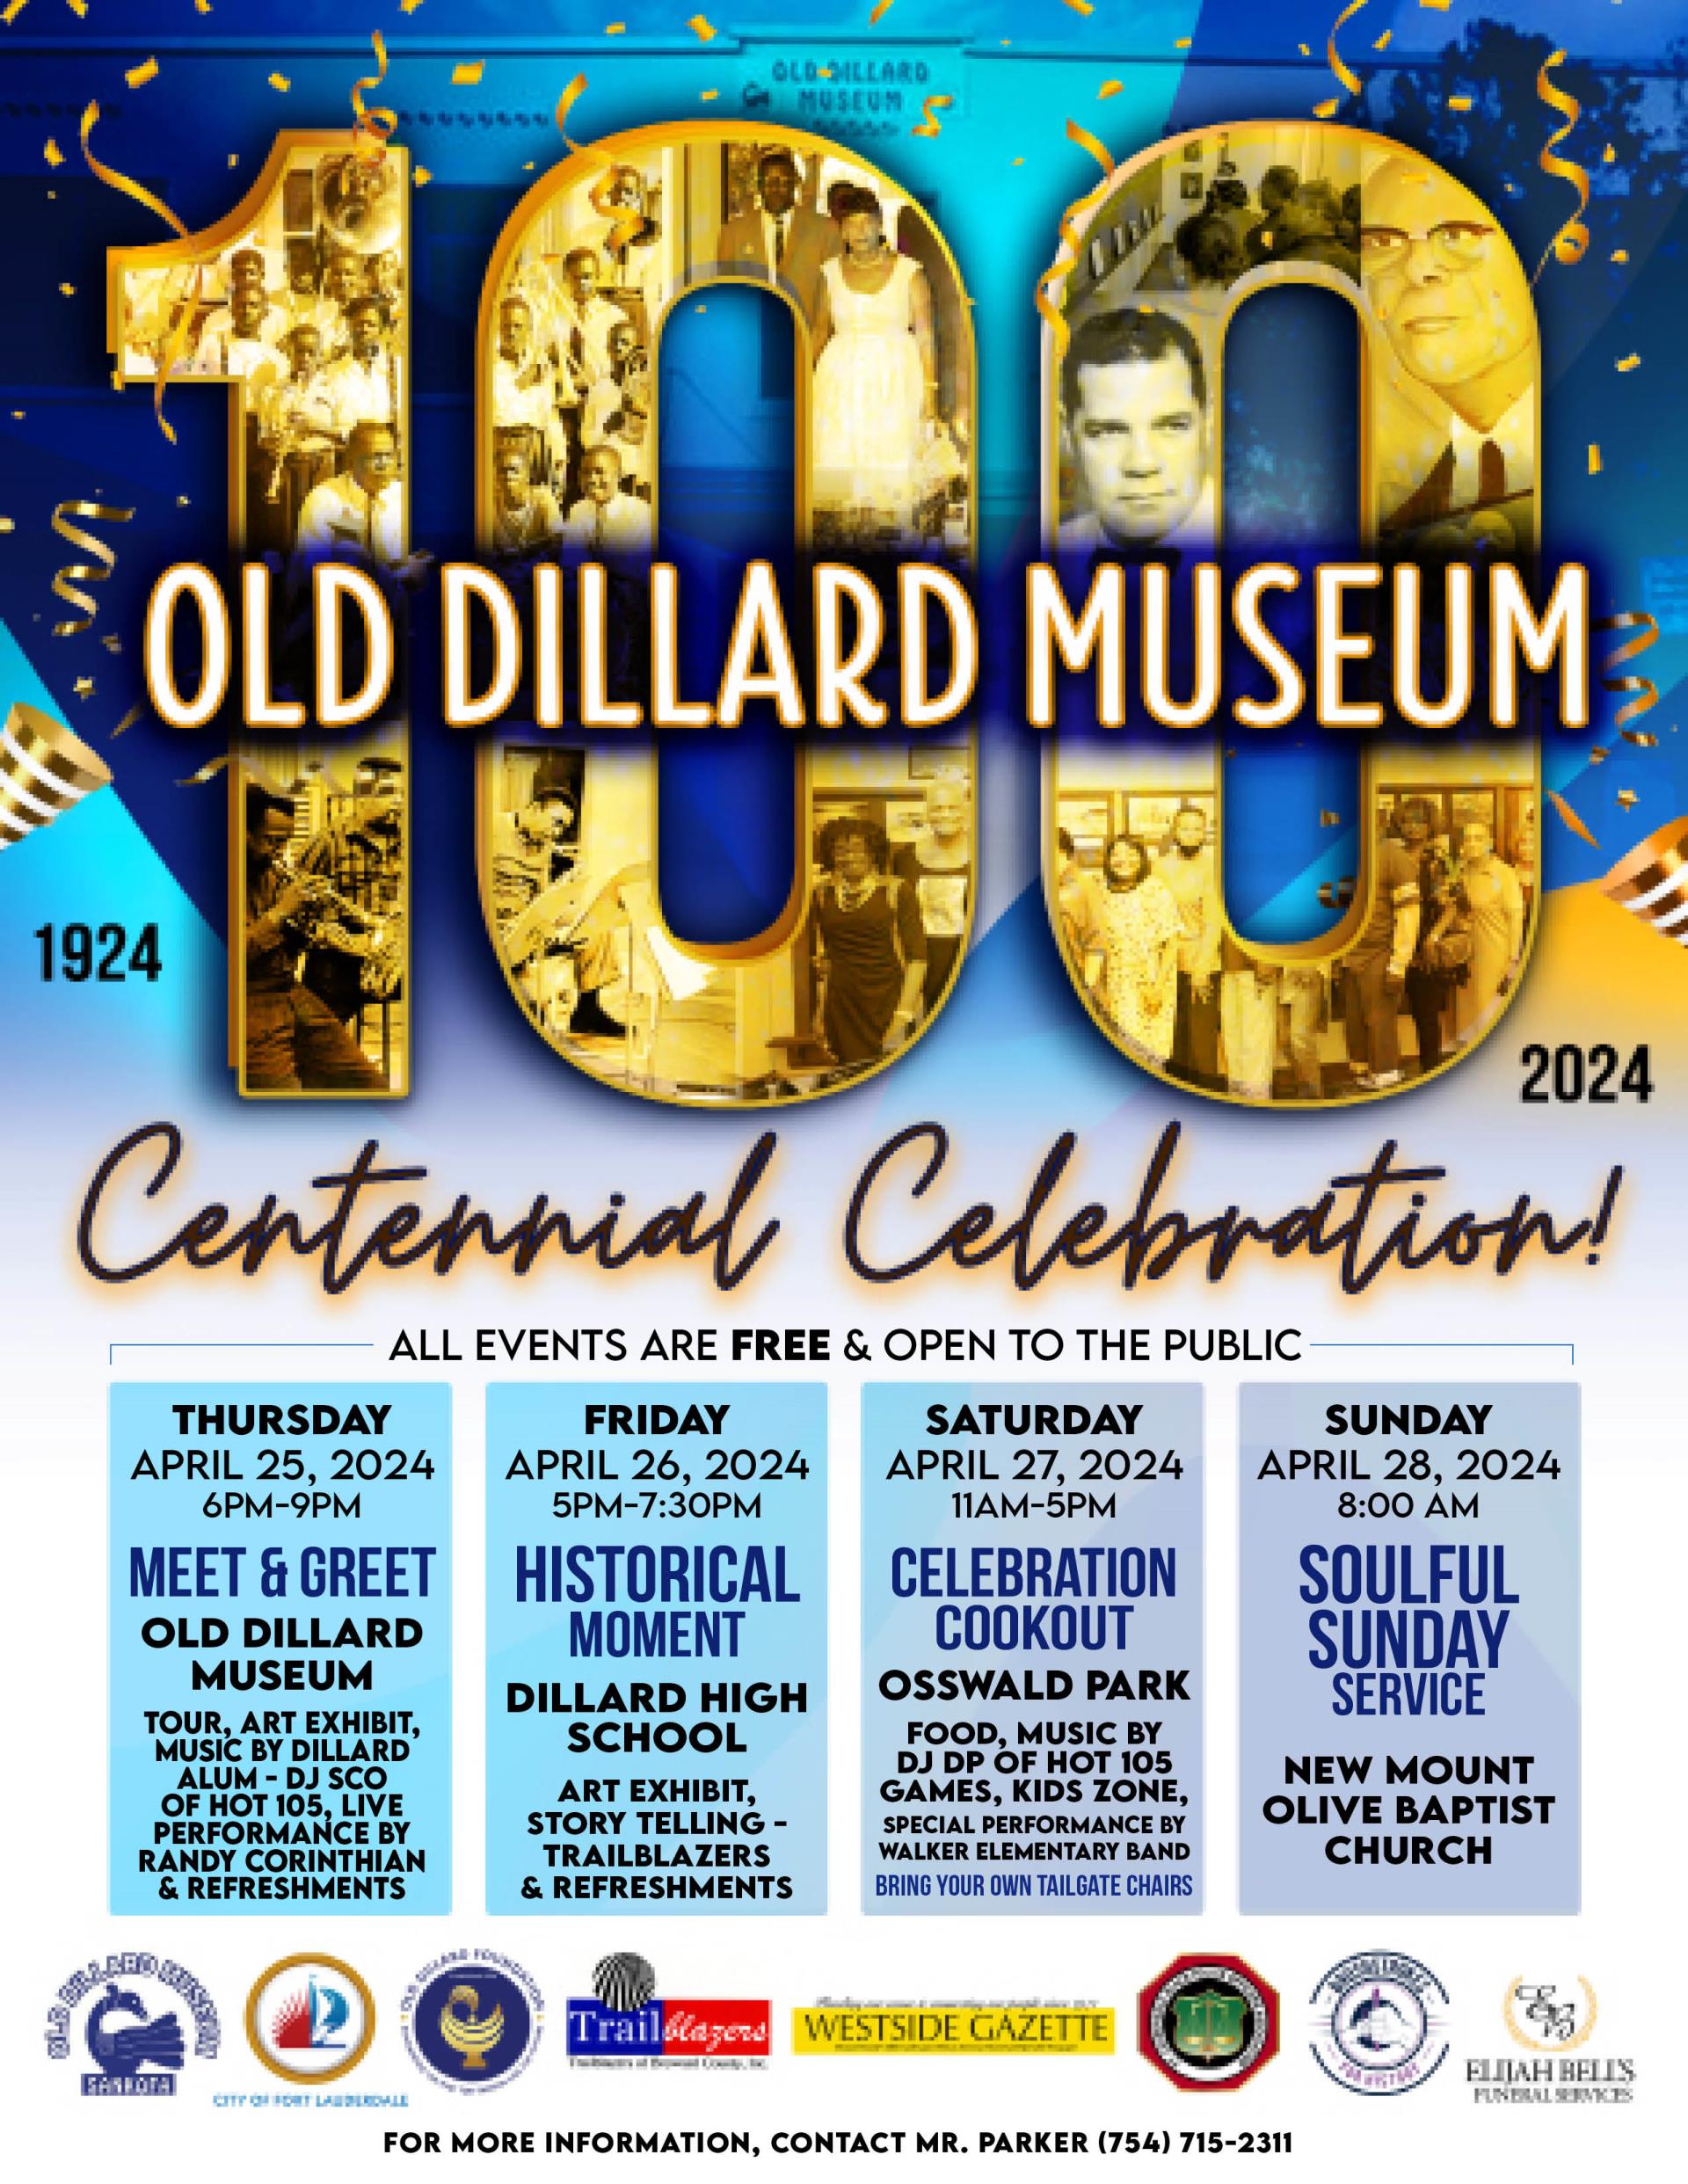 Old Dillard Museum Centennial Celebration. Click for flyer.